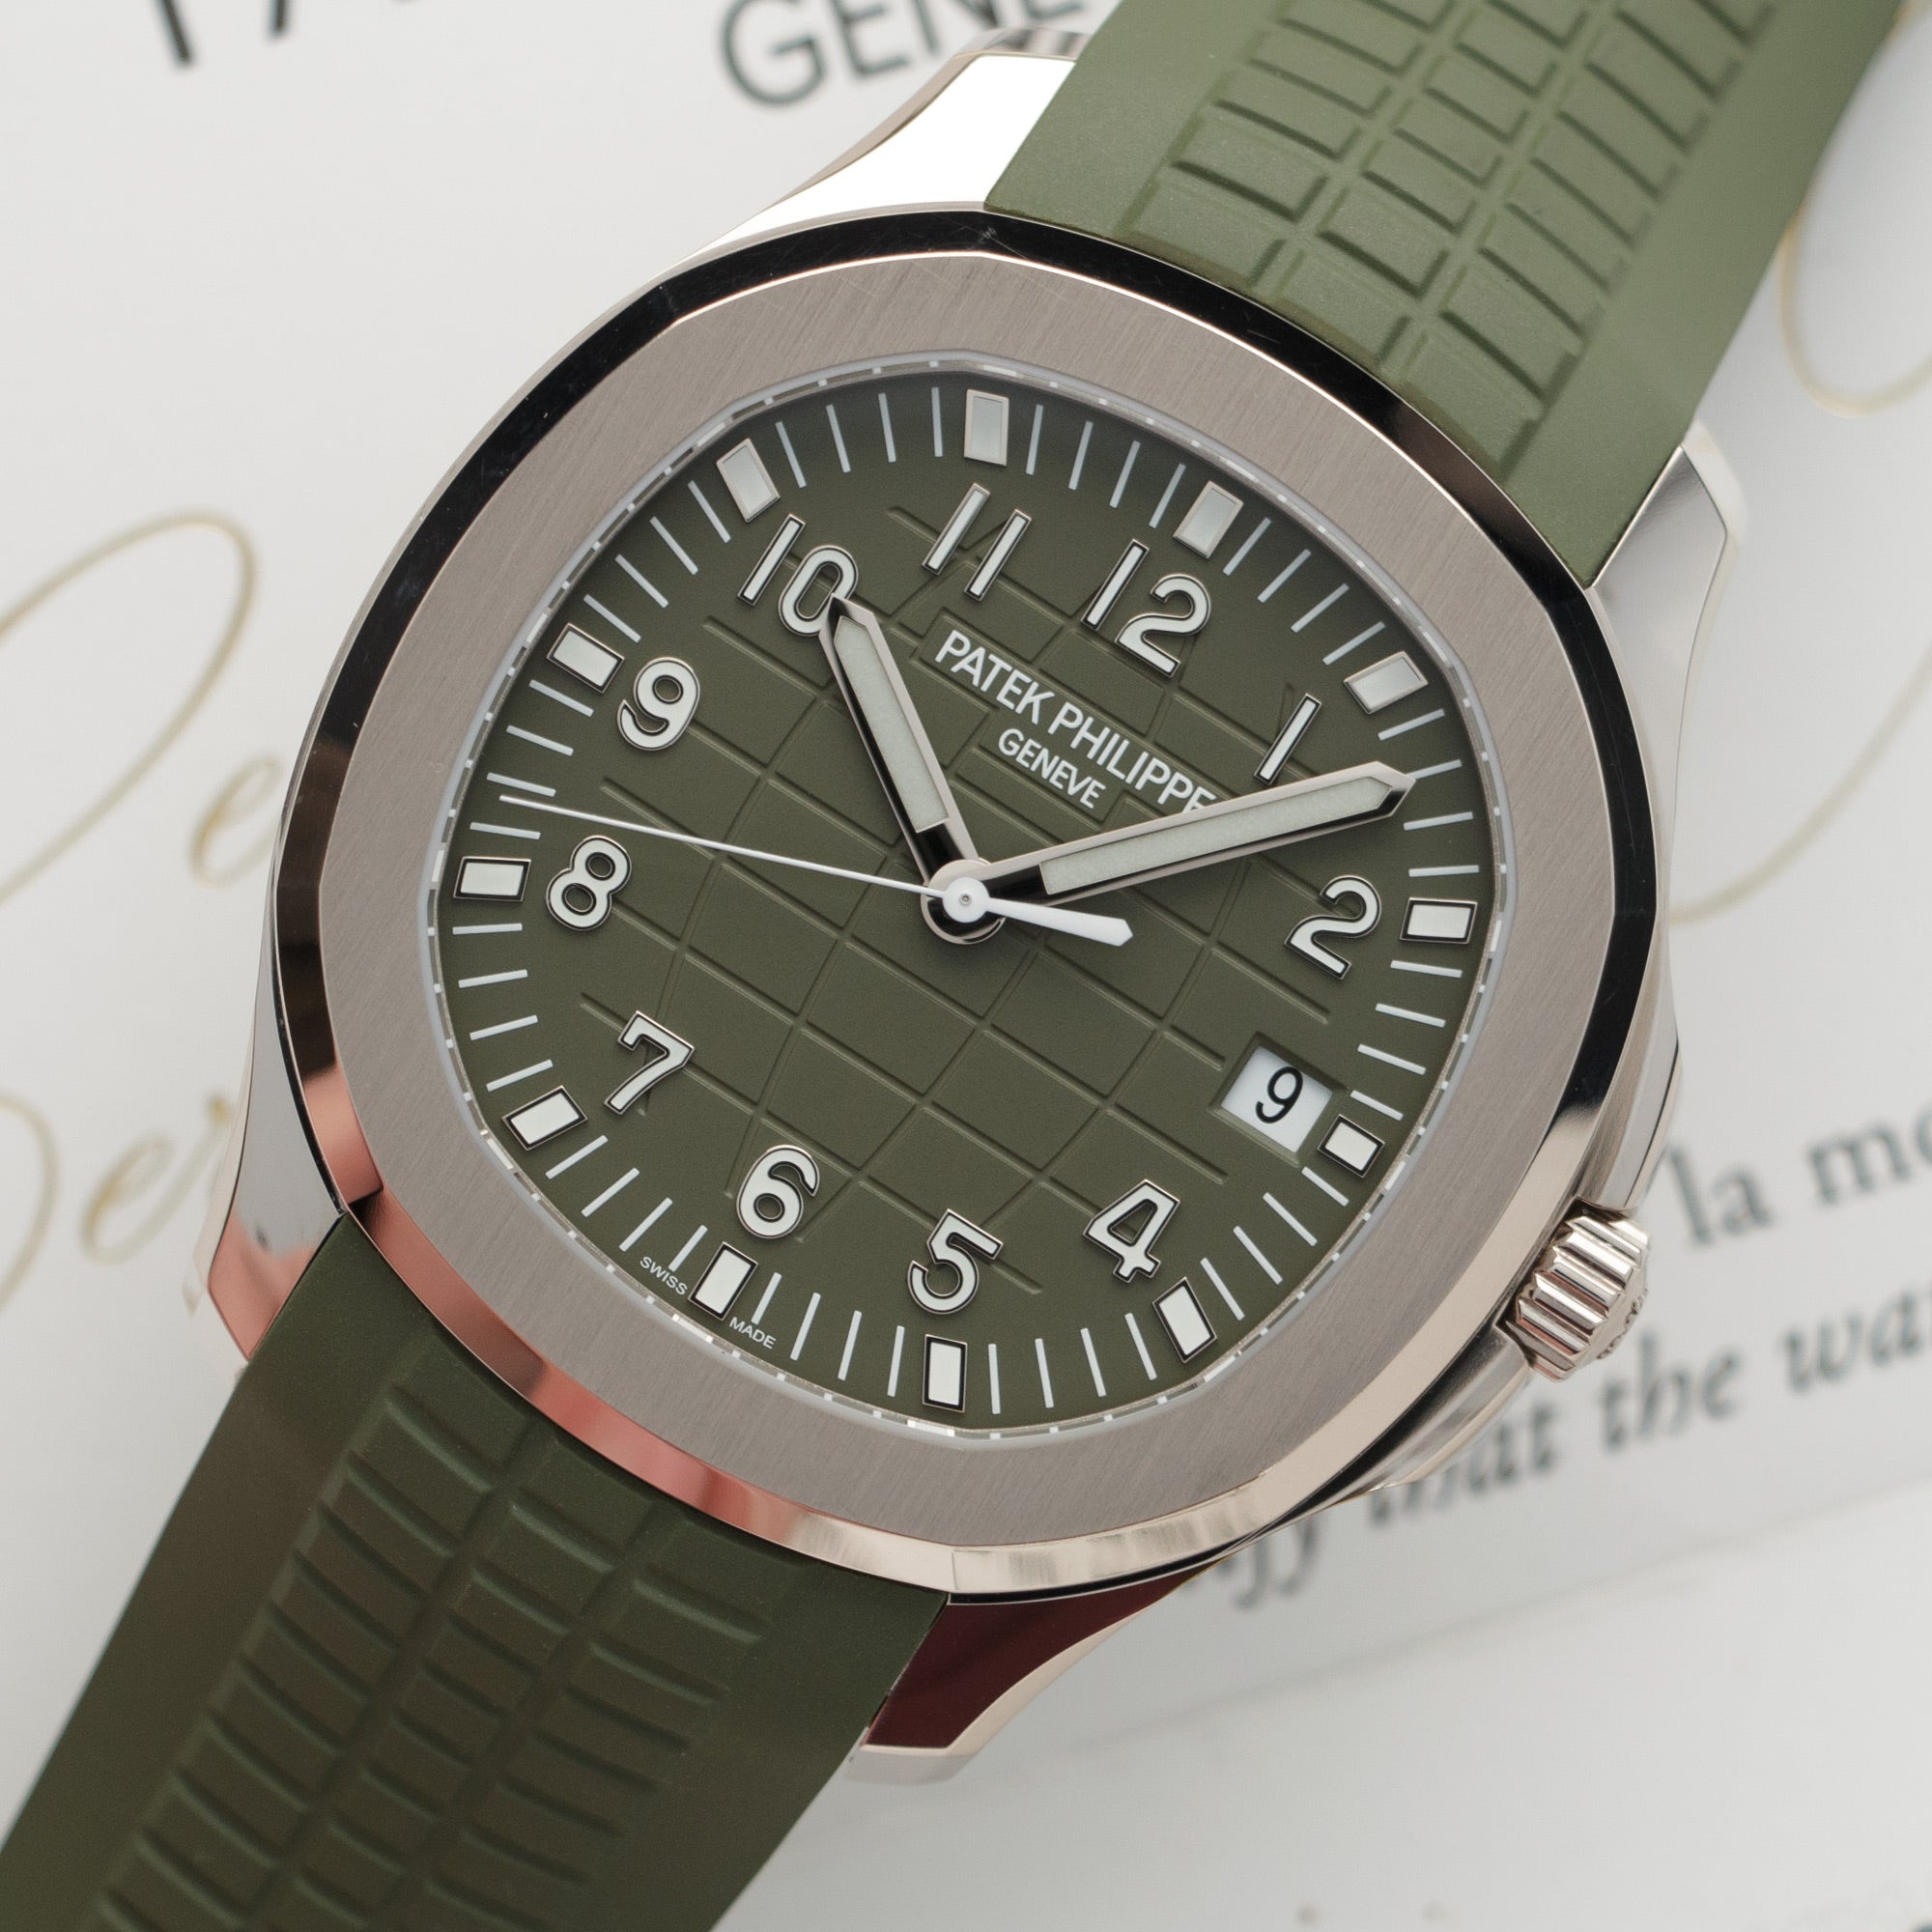 Patek Philippe - Patek Philippe White Gold Aquanaut Khaki Green Watch Ref. 5168 - The Keystone Watches